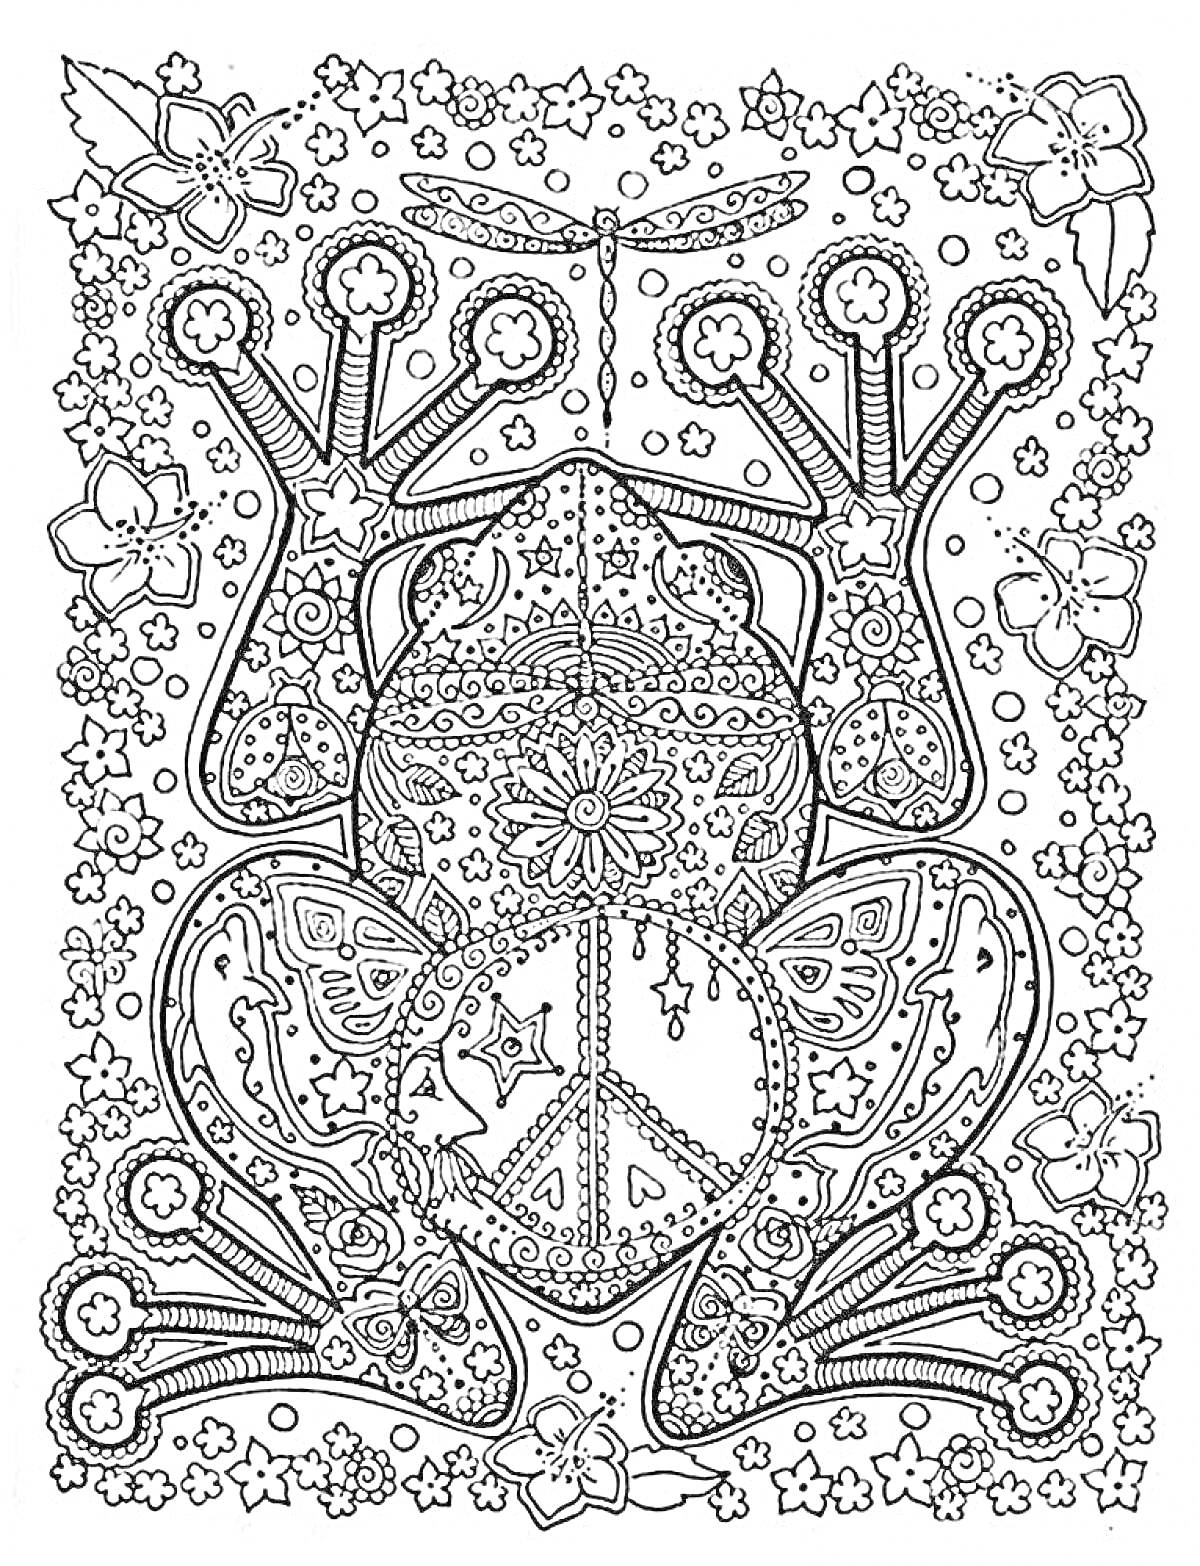 Раскраска Лягушка с узорами и символом мира, окруженная цветами и бабочками